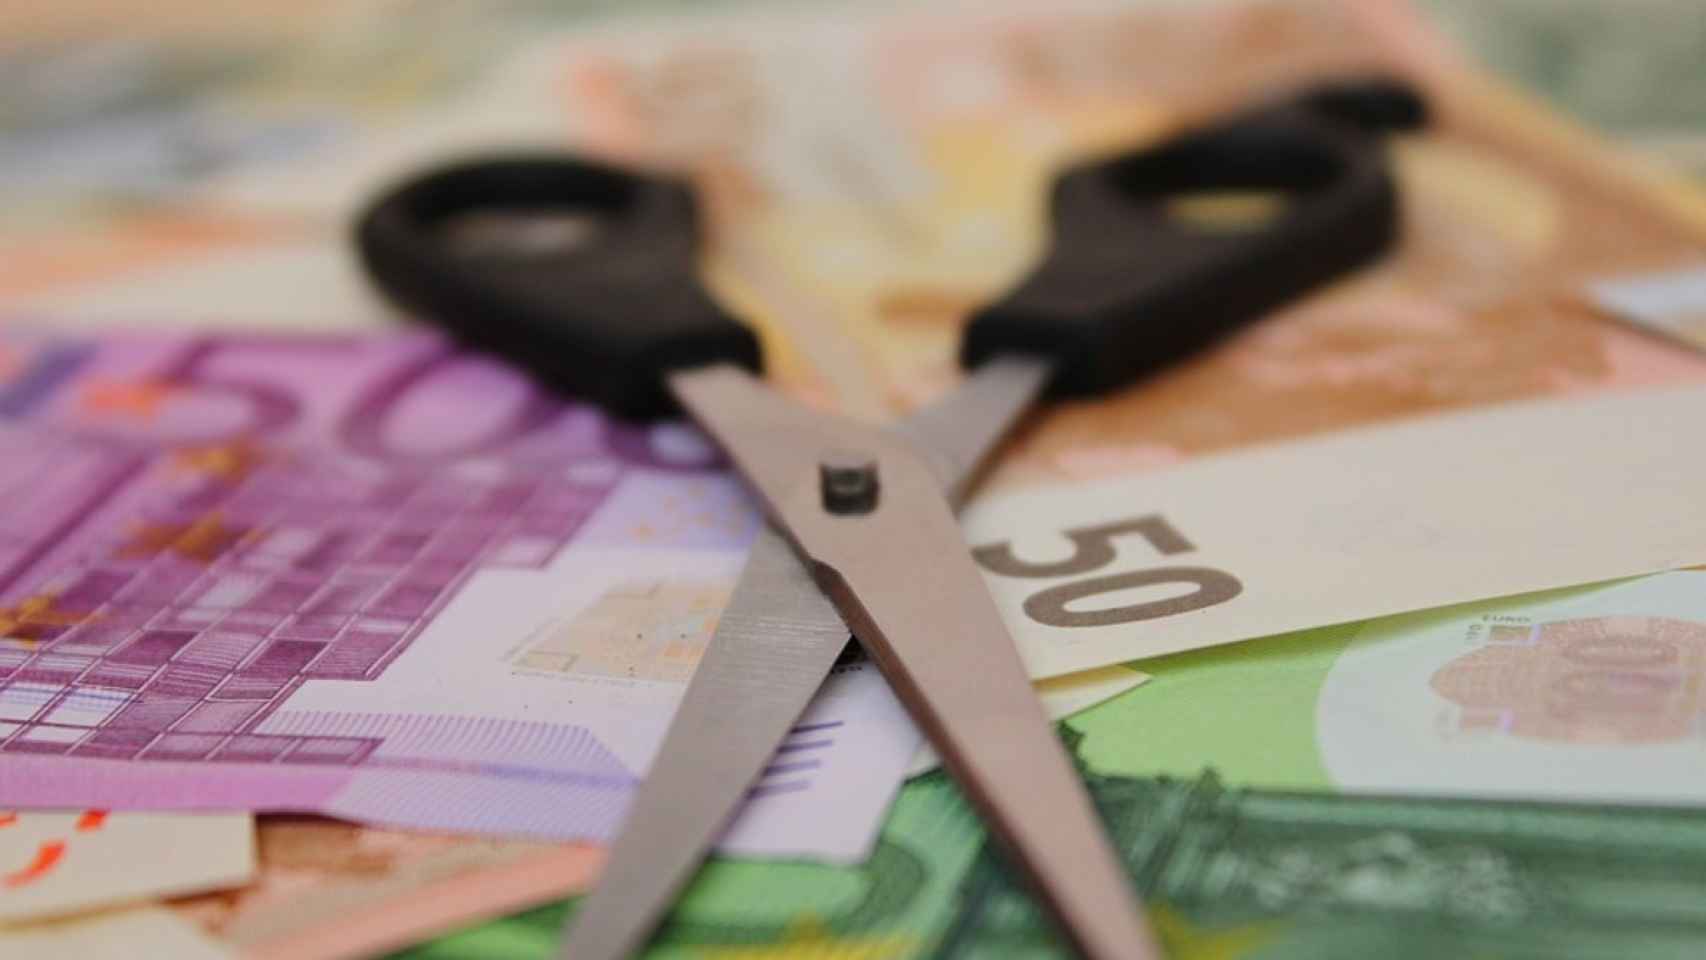 Unas tijeras sobre billetes de euro.